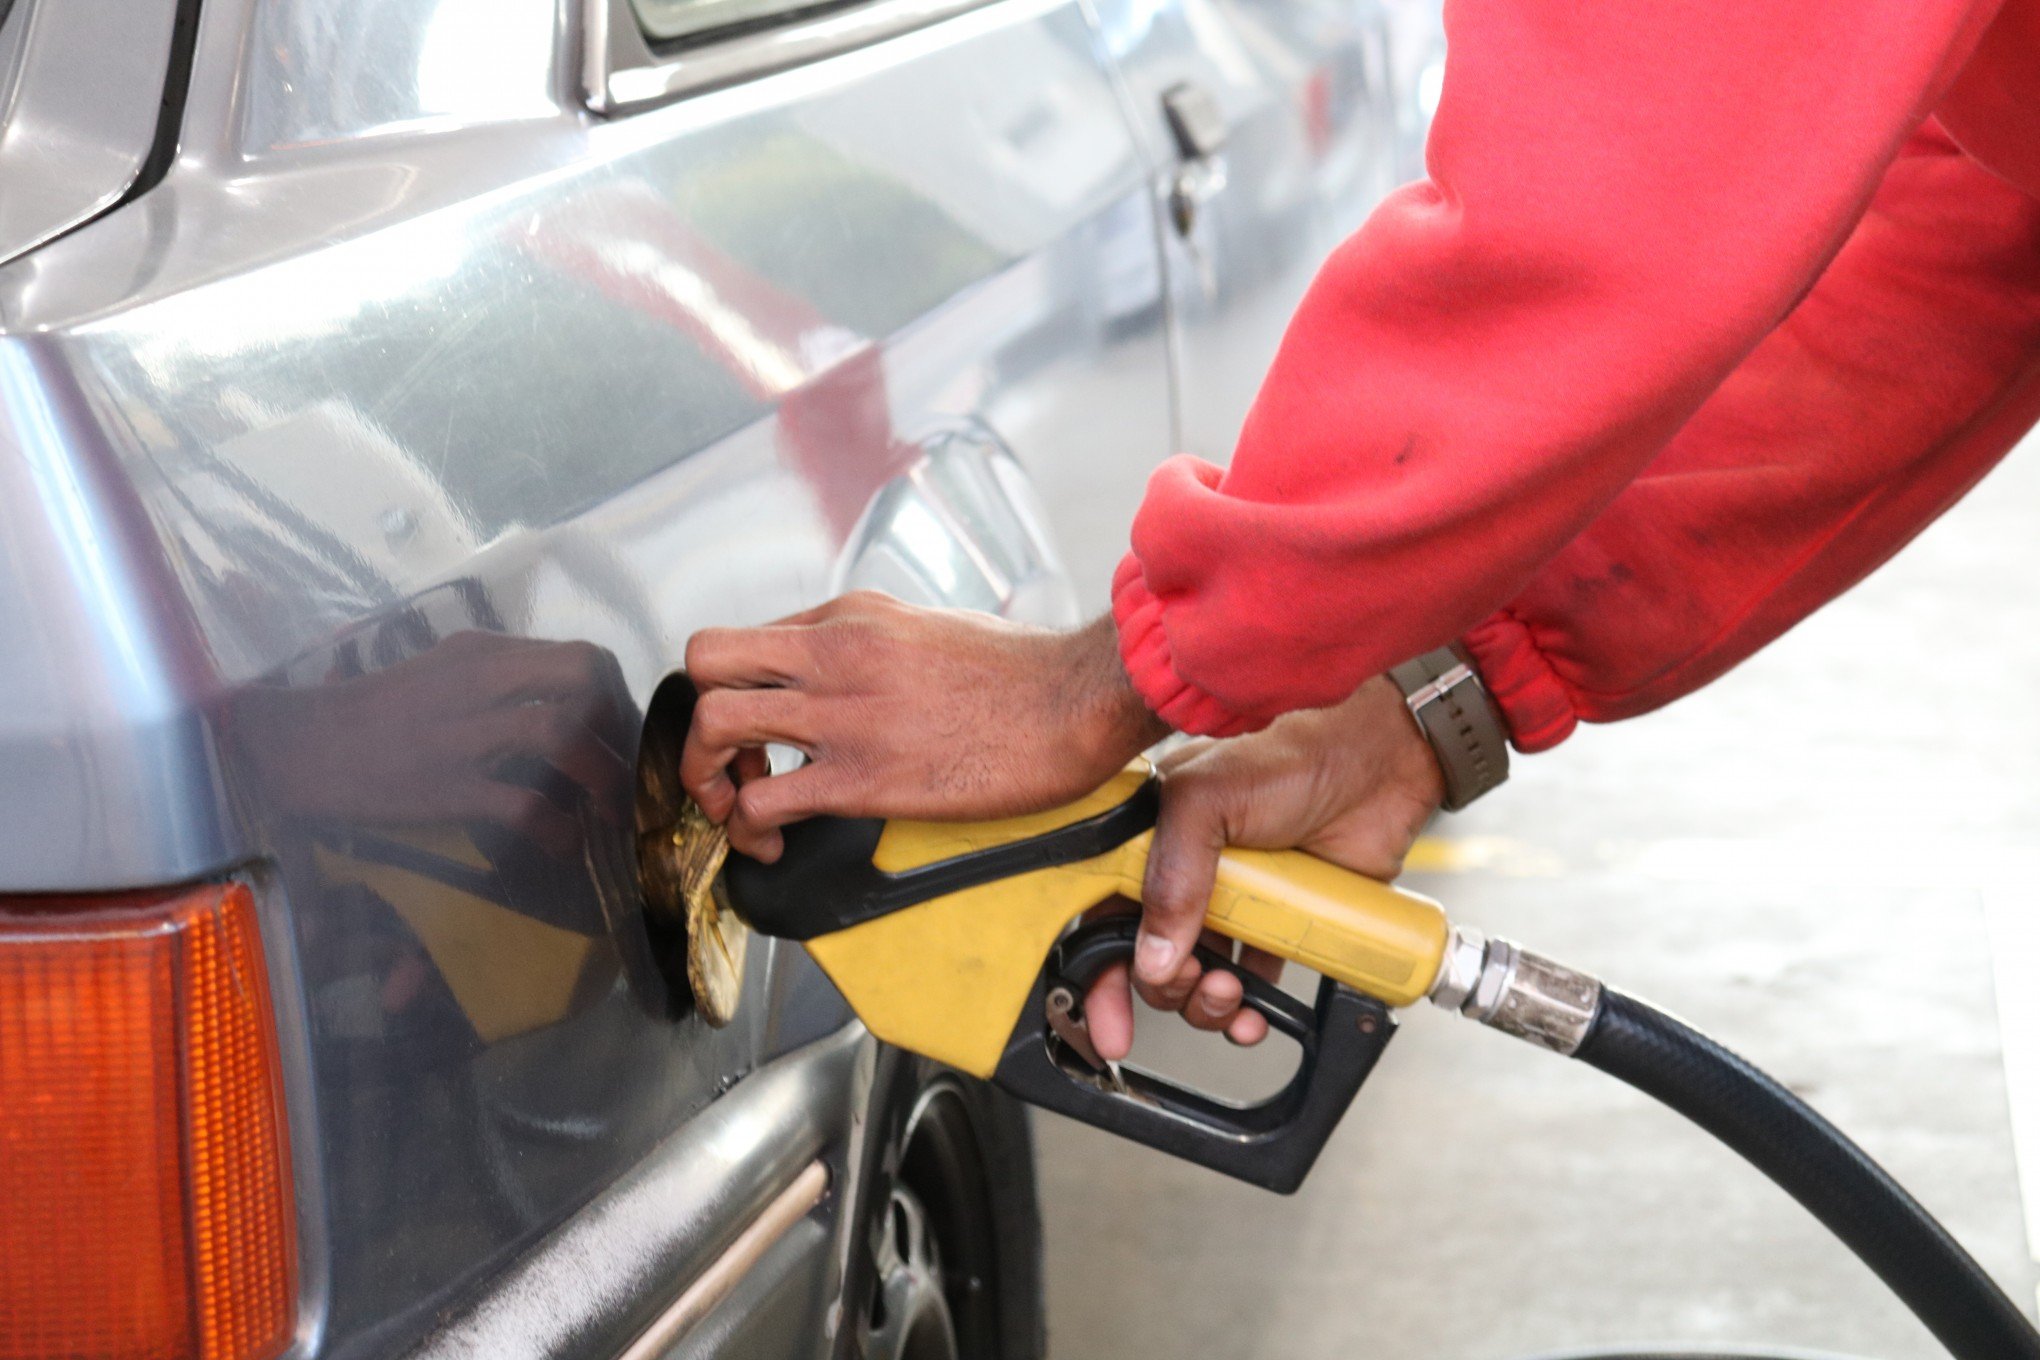 Gasolina e diesel estão mais baratos no Brasil do que no mercado internacional, antes do reajuste